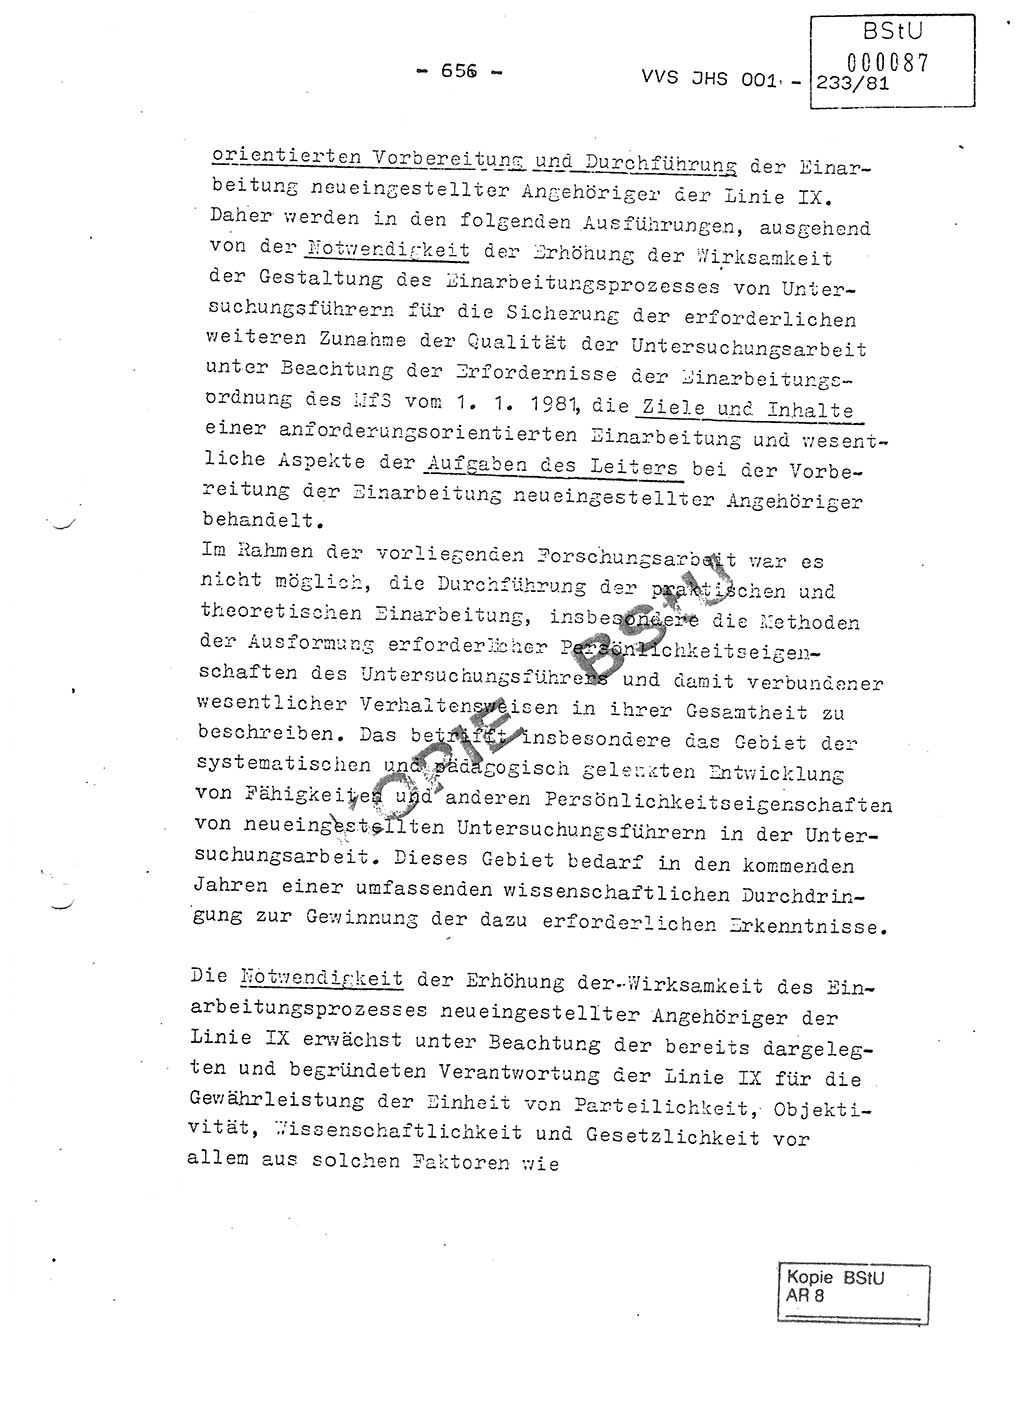 Dissertation Oberstleutnant Horst Zank (JHS), Oberstleutnant Dr. Karl-Heinz Knoblauch (JHS), Oberstleutnant Gustav-Adolf Kowalewski (HA Ⅸ), Oberstleutnant Wolfgang Plötner (HA Ⅸ), Ministerium für Staatssicherheit (MfS) [Deutsche Demokratische Republik (DDR)], Juristische Hochschule (JHS), Vertrauliche Verschlußsache (VVS) o001-233/81, Potsdam 1981, Blatt 656 (Diss. MfS DDR JHS VVS o001-233/81 1981, Bl. 656)